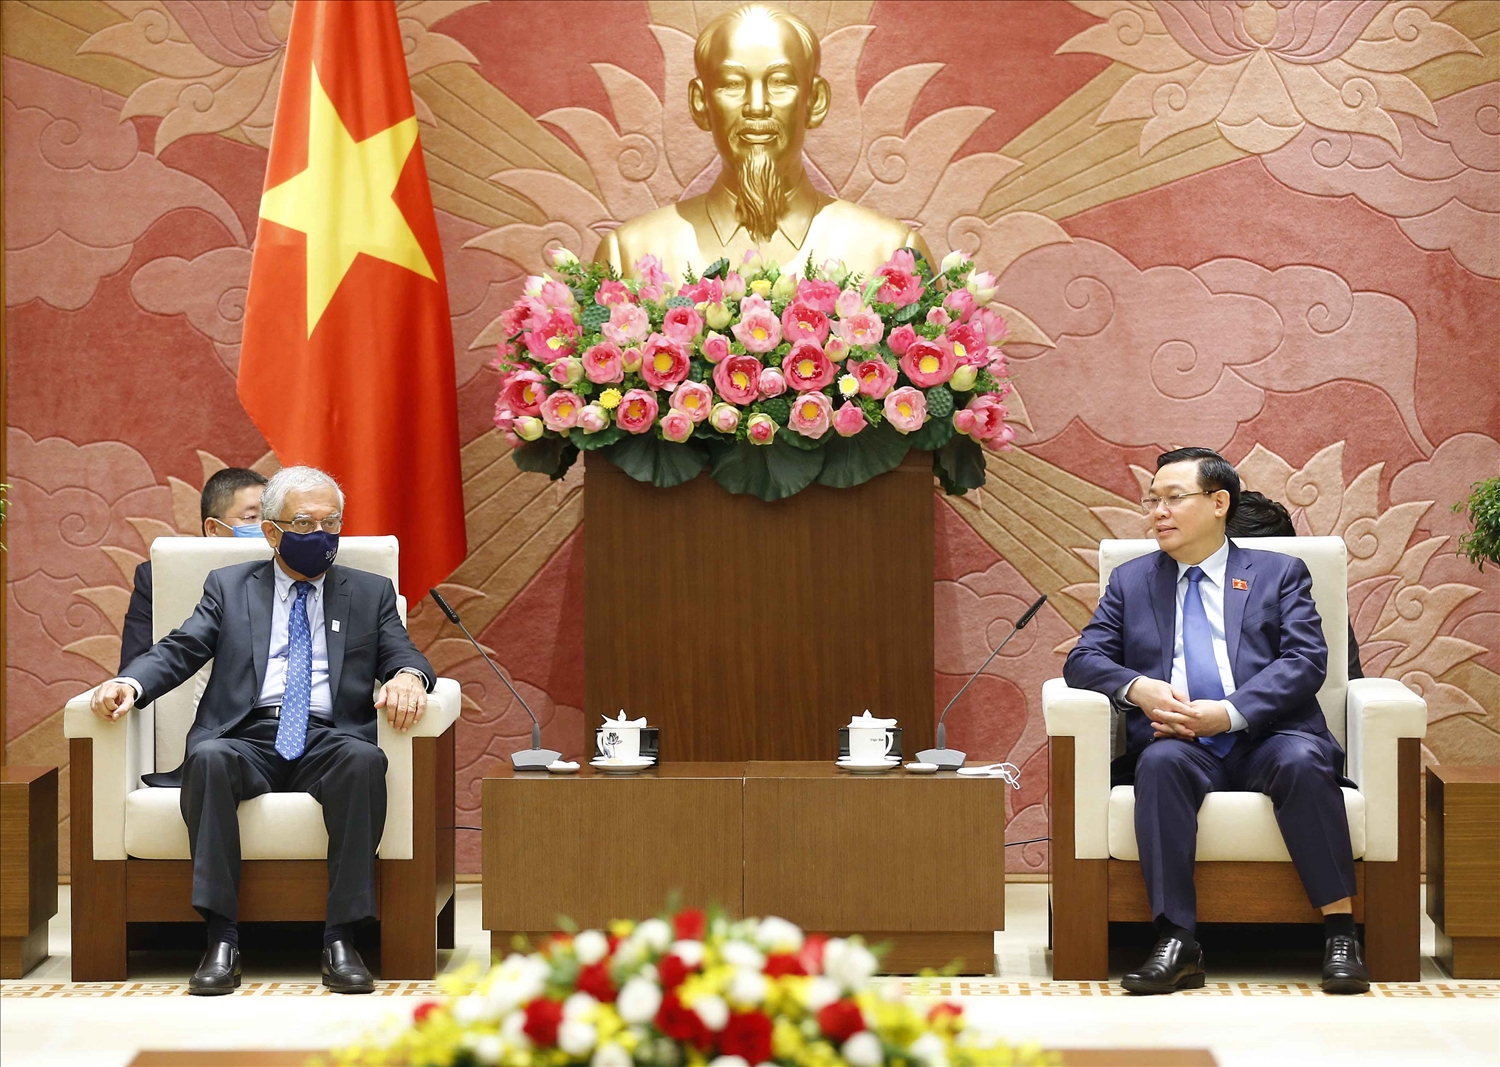 Chủ tịch Quốc hội Vương Đình Huệ cảm ơn LHQ đã có nhiều hoạt động hợp tác hiệu quả, thiết thực hỗ trợ Quốc hội và các cơ quan của Quốc hội Việt Nam. Ảnh: VGP